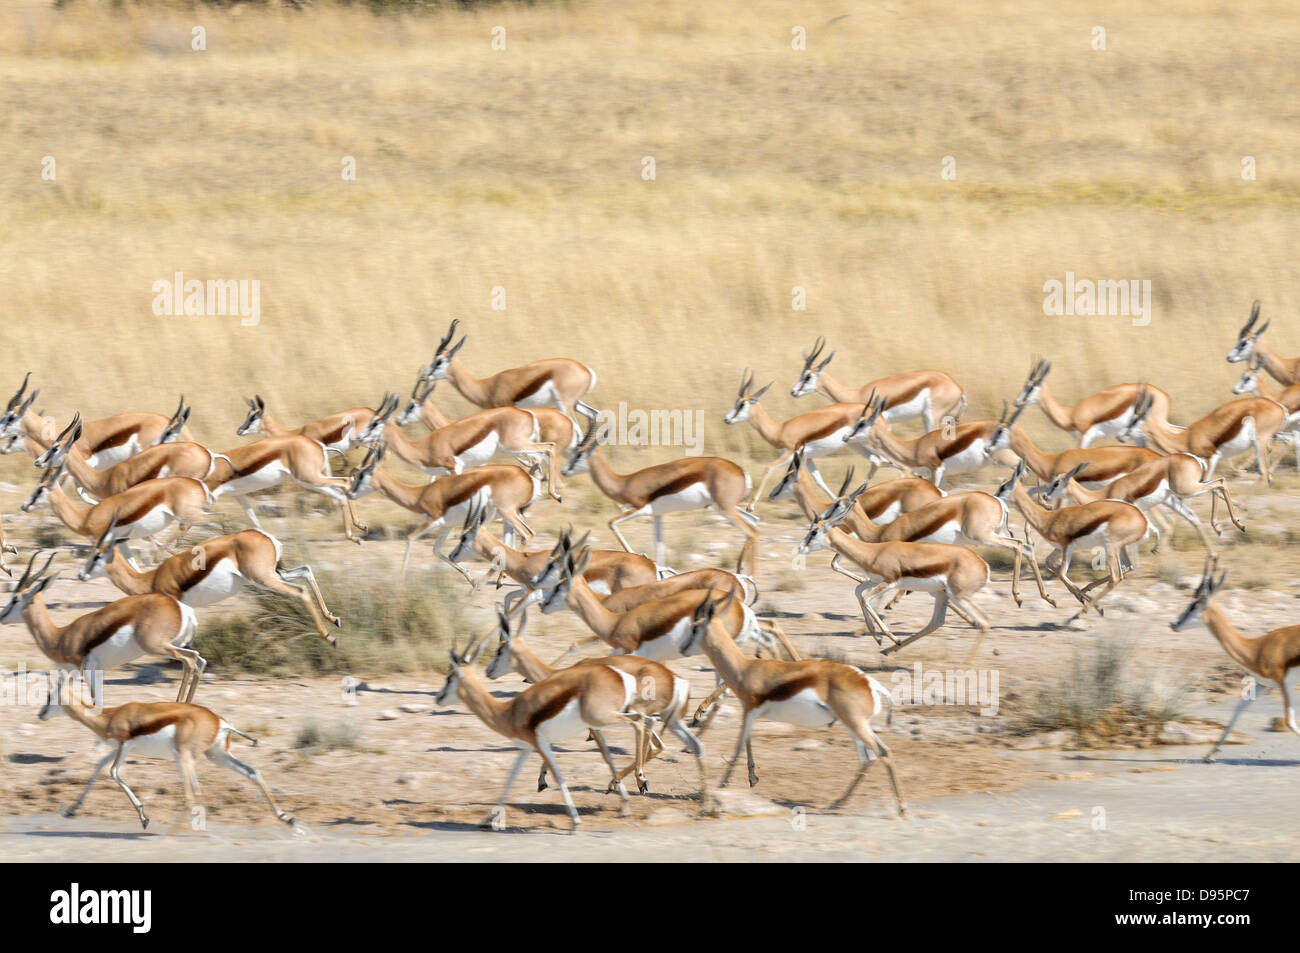 Springbok Antidorcas marsupialis manada corriendo desde el orificio de agua fotografiado en el Parque Nacional de Etosha, Namibia Foto de stock